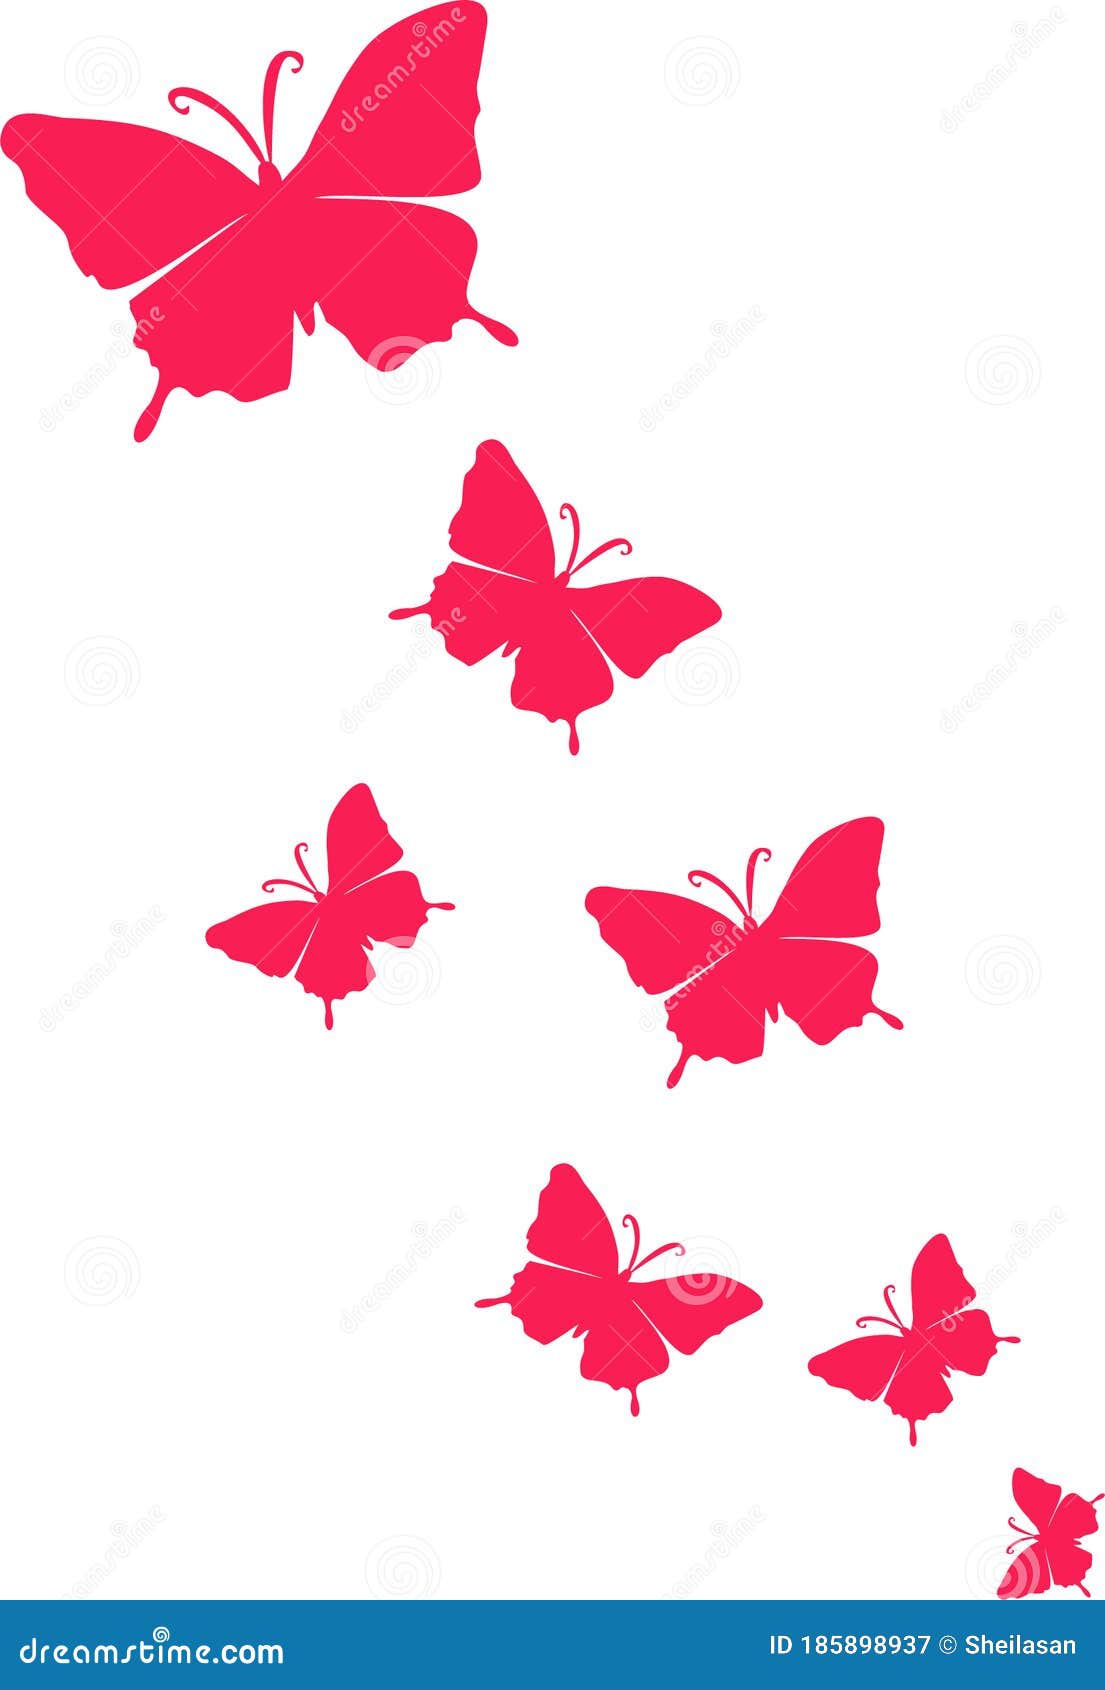 Bando de borboletas